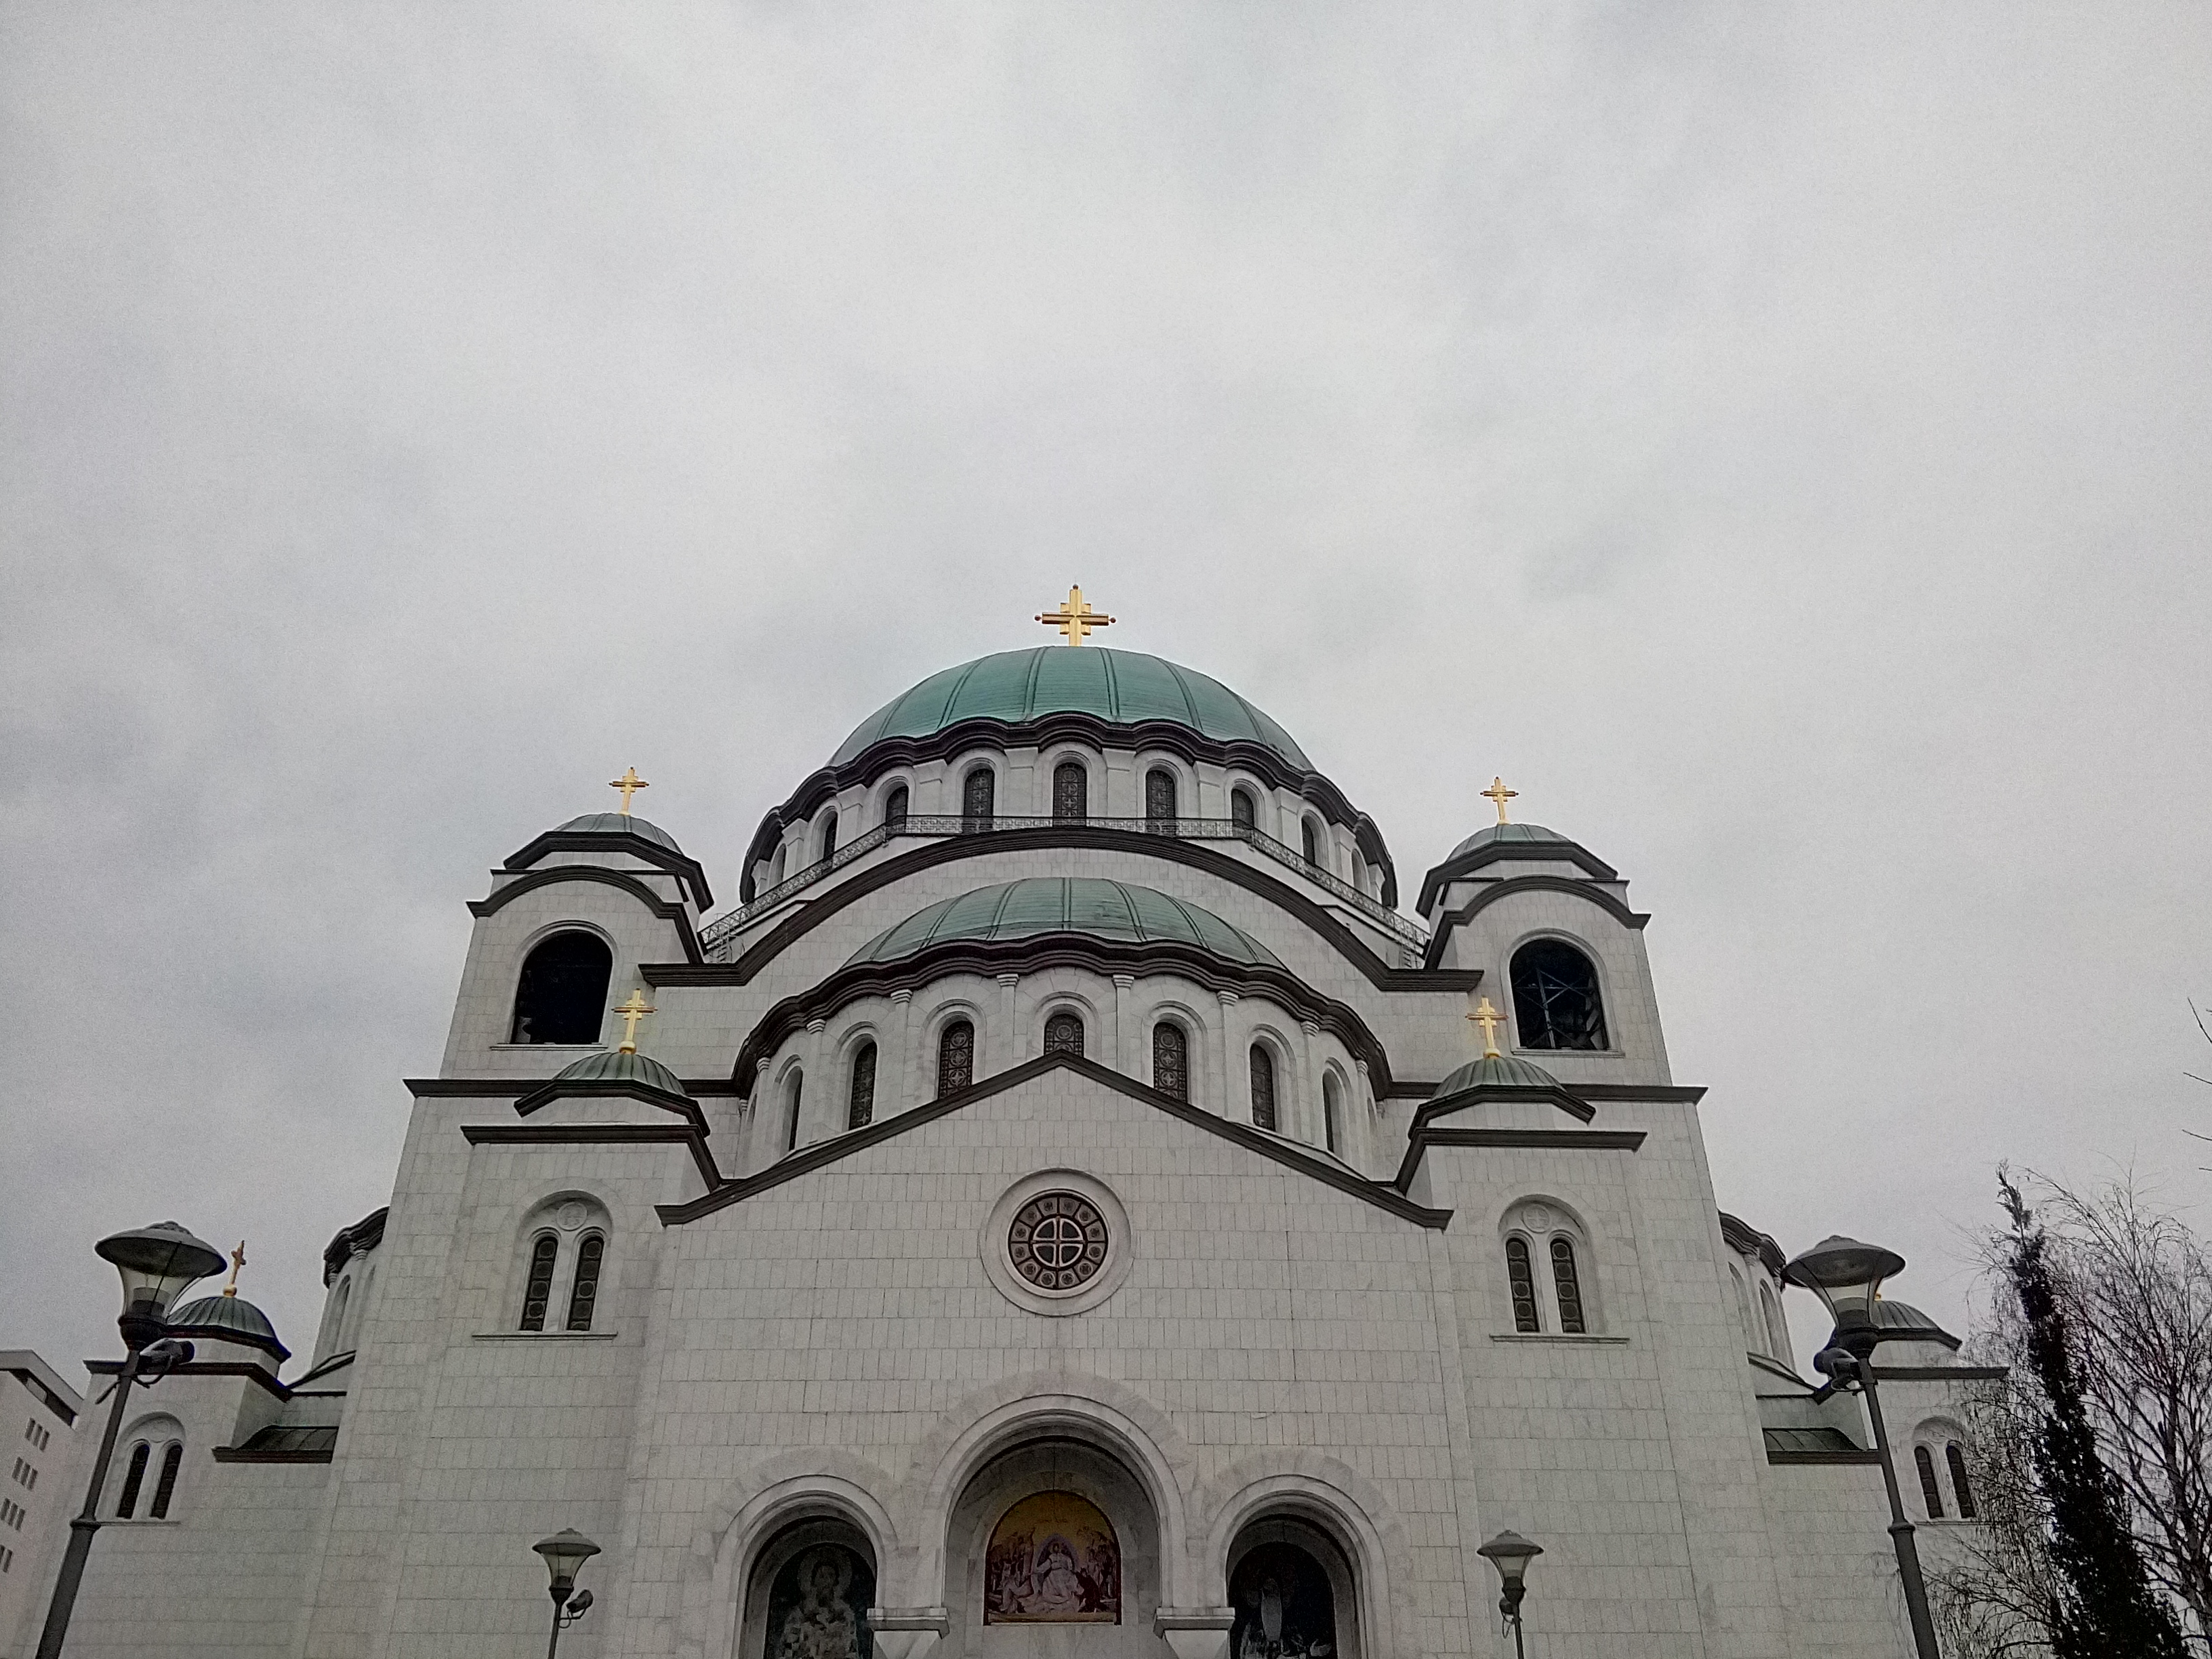 hram sv. Save, Beograd